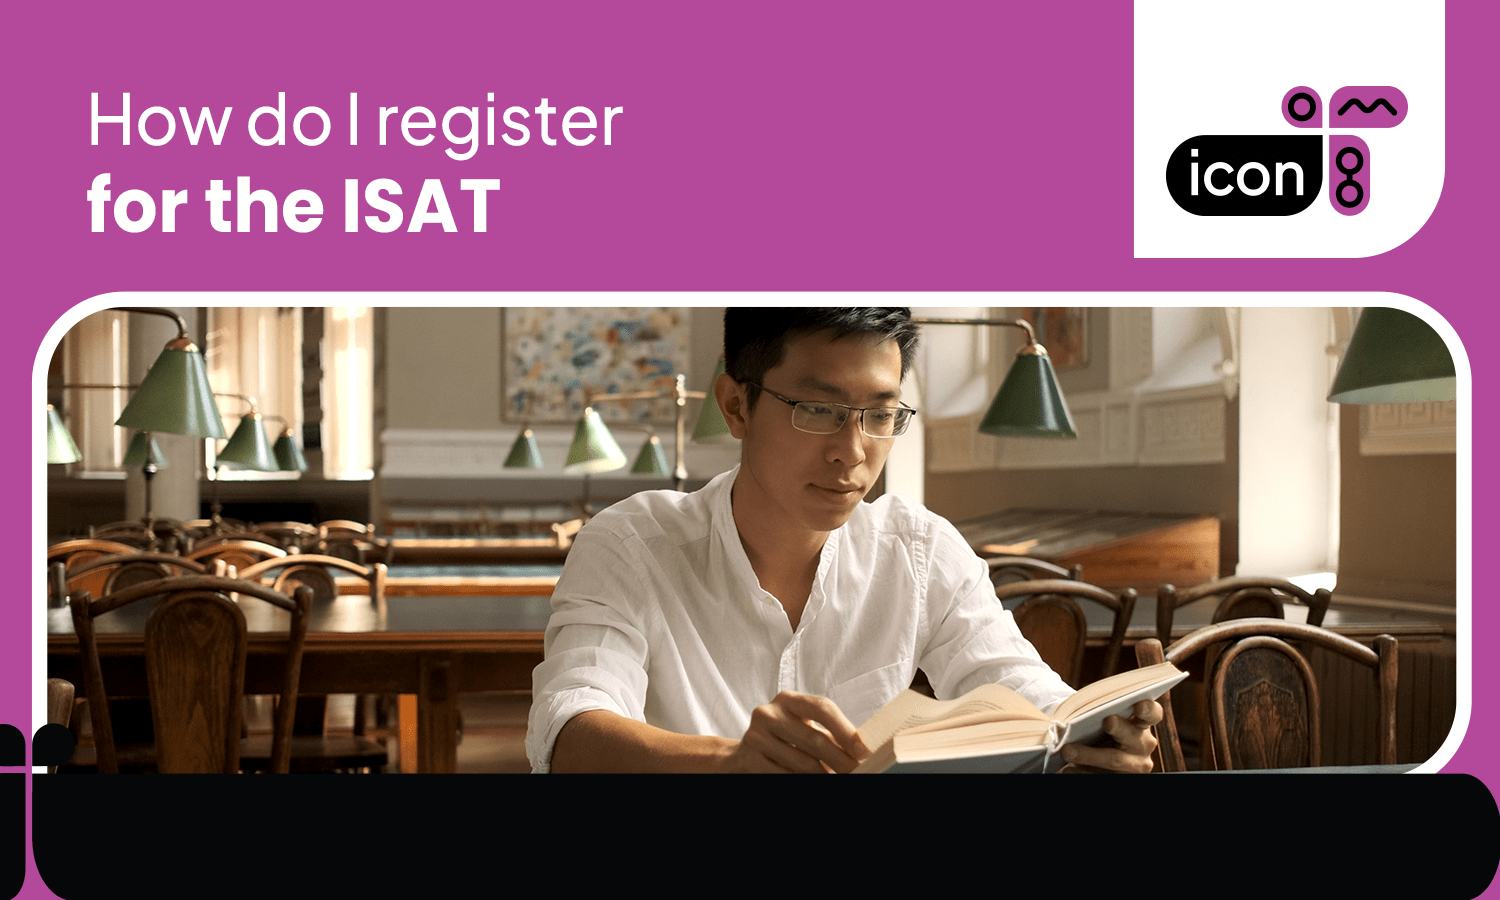 ISAT registration